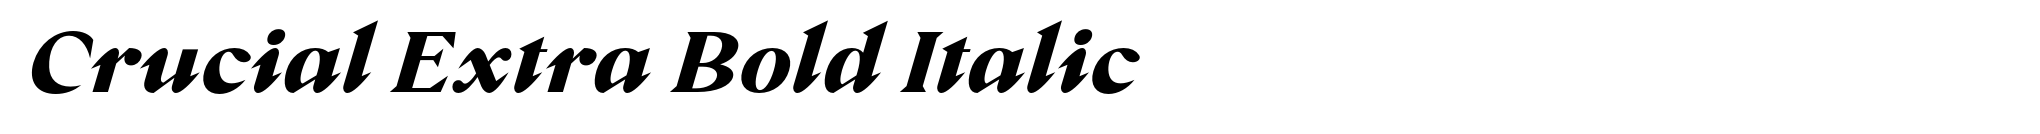 Crucial Extra Bold Italic image